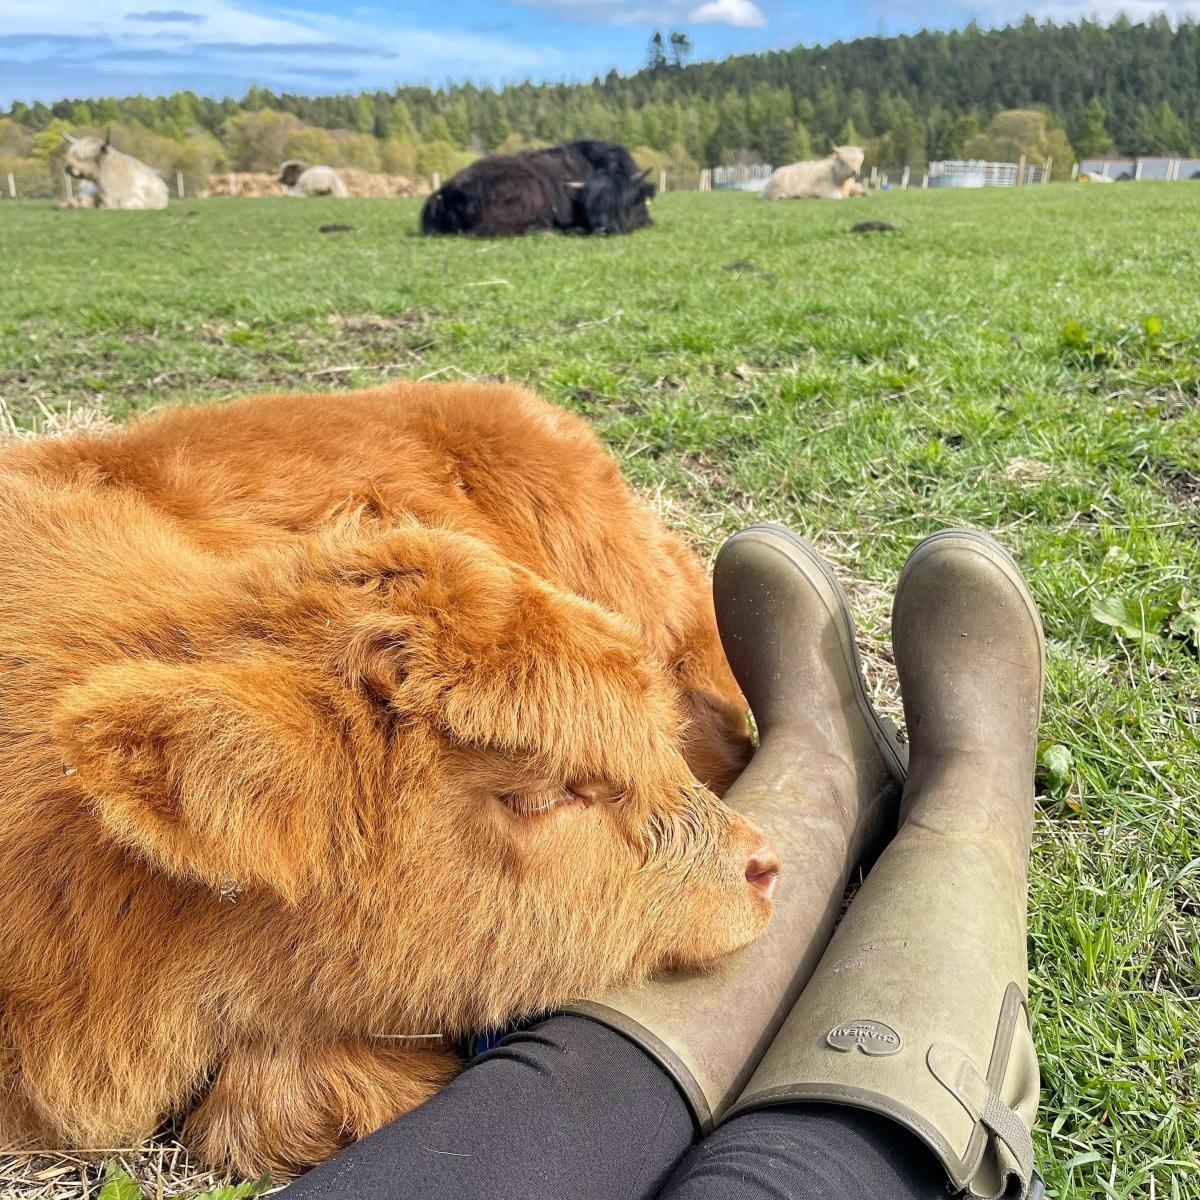 Rachel Thomson - Our highlander calf Nala having a nap